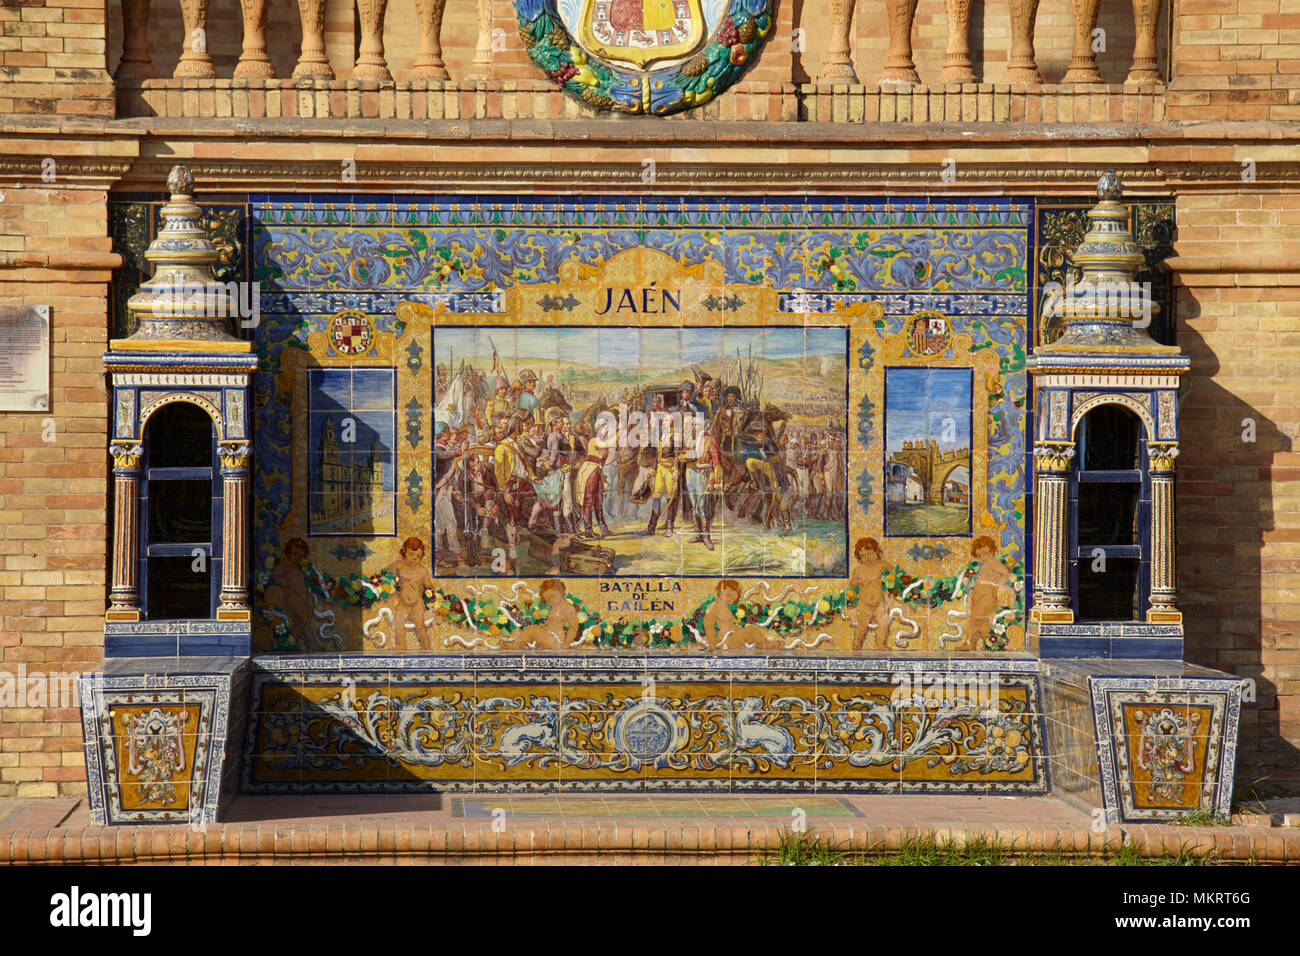 Die Gefliesten provinziellen Nischen an der Plaza de España (Spanien Platz) in Sevilla, Spanien Stockfoto